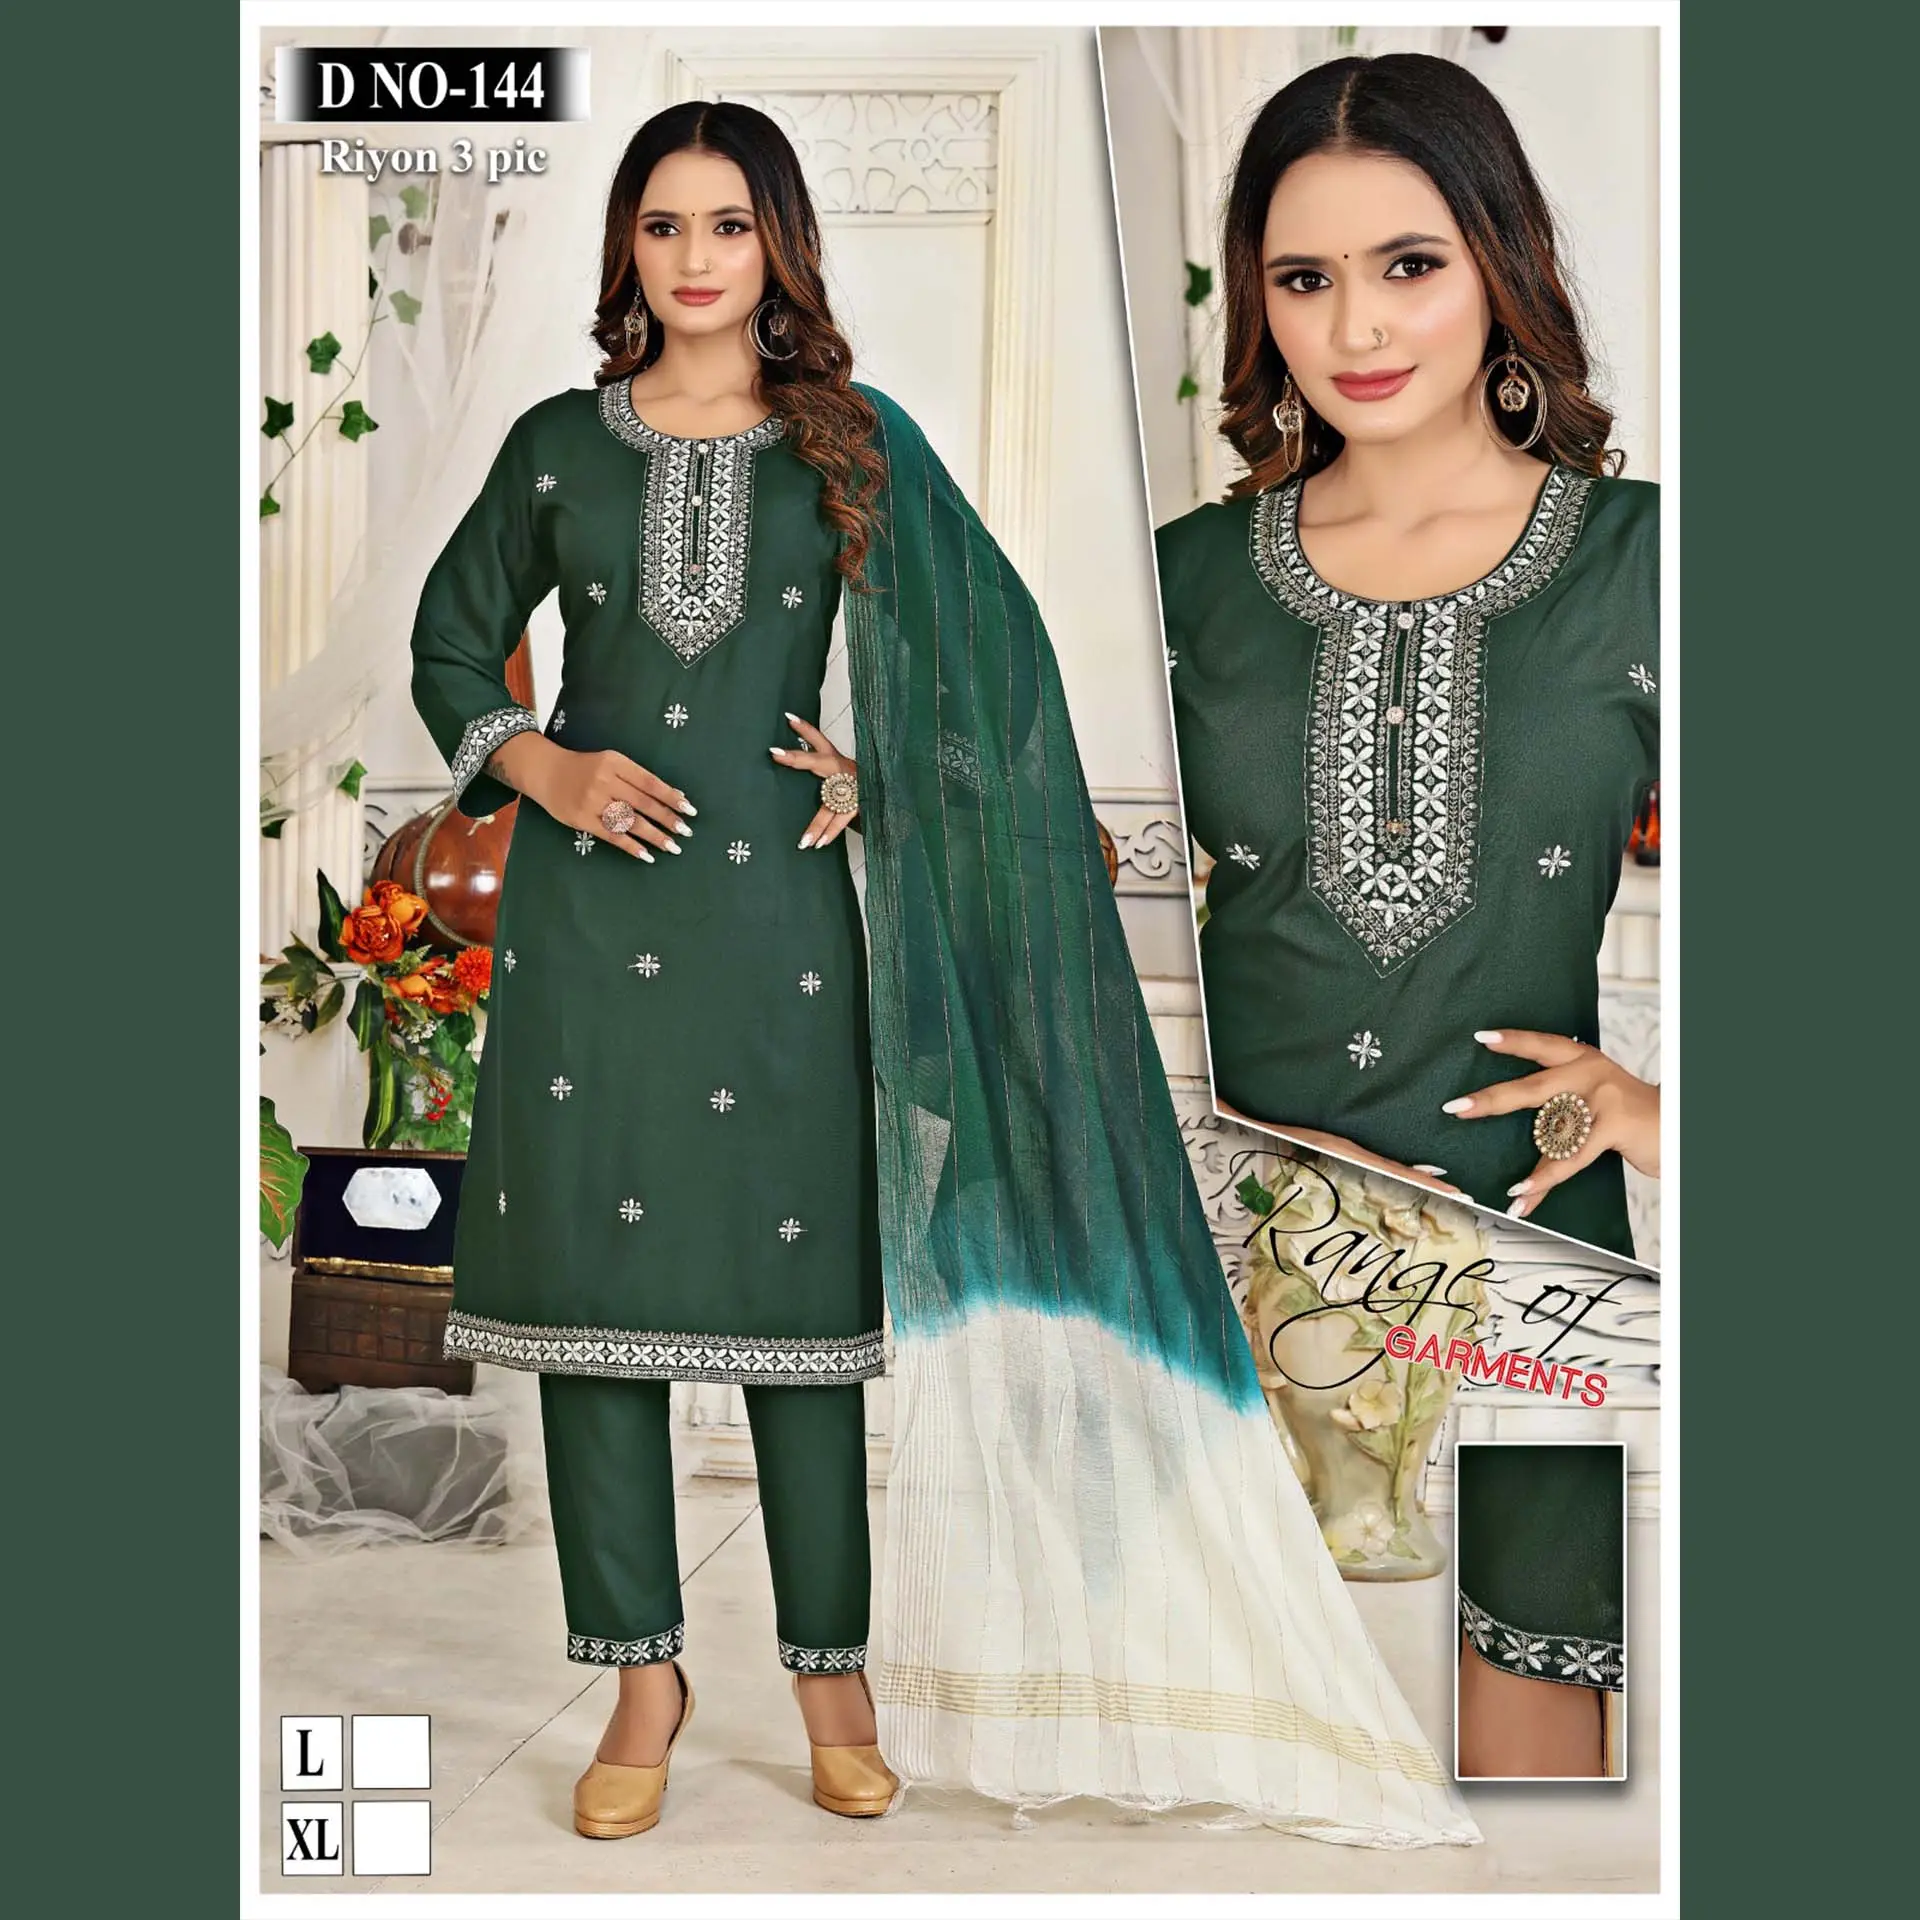 Ad alta richiesta alta qualità Kurti Pant & Dupatta Set moda indiano e Pakistani abbigliamento stampato ricamo lavoro all'ingrosso